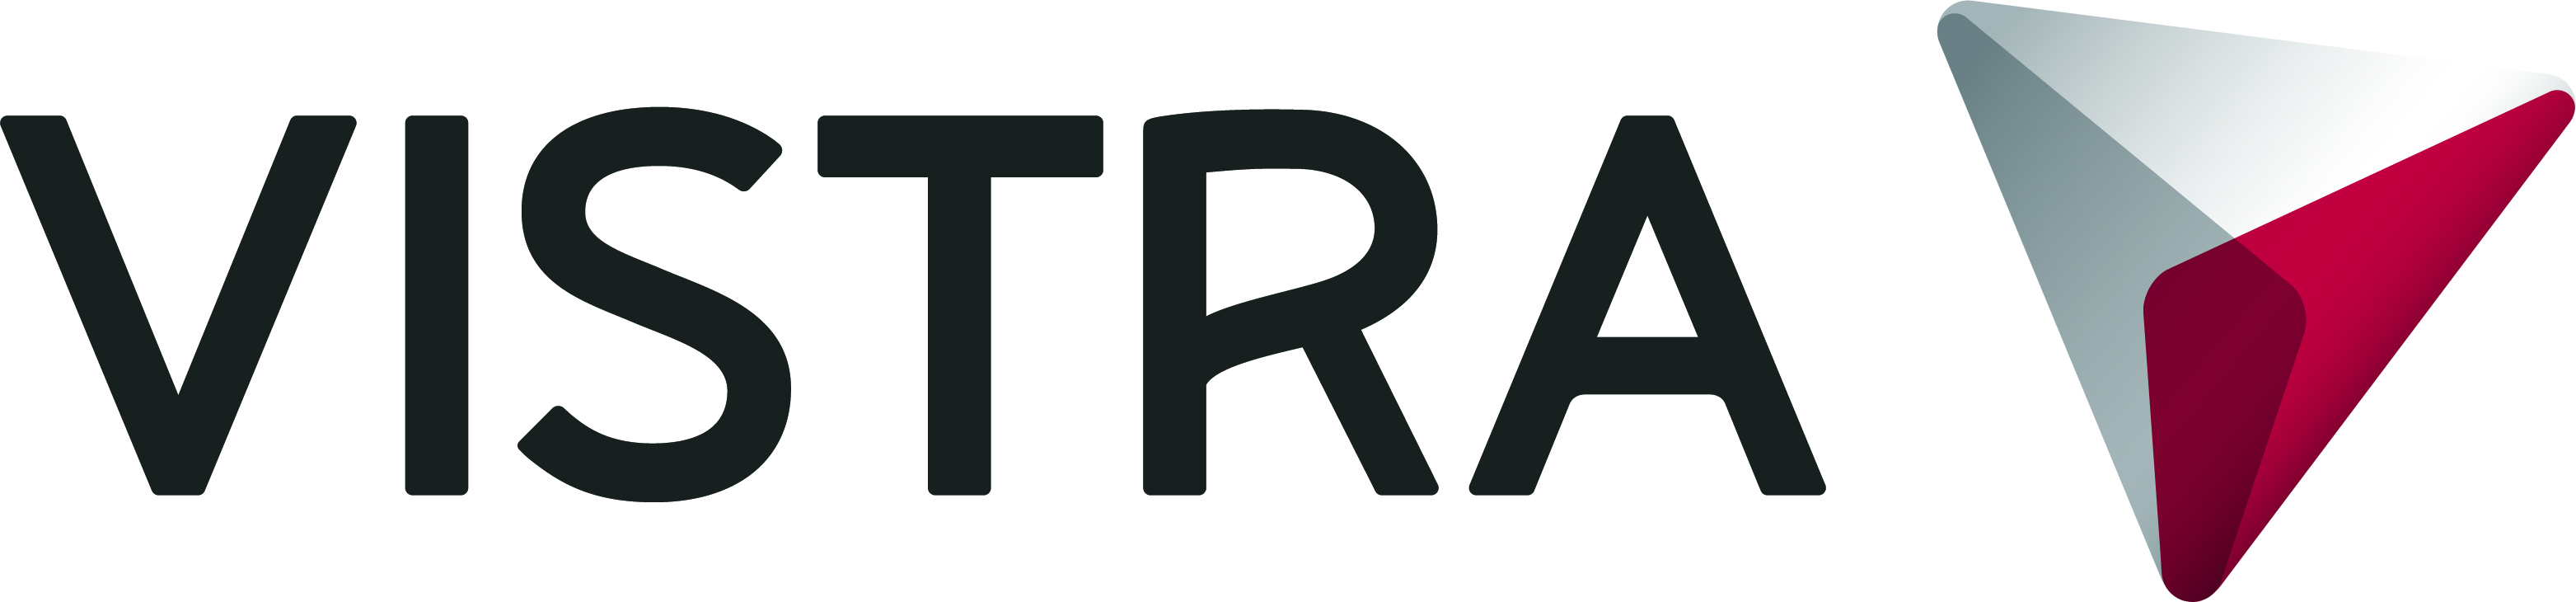 Vistra GmbH & Co. KG Logo